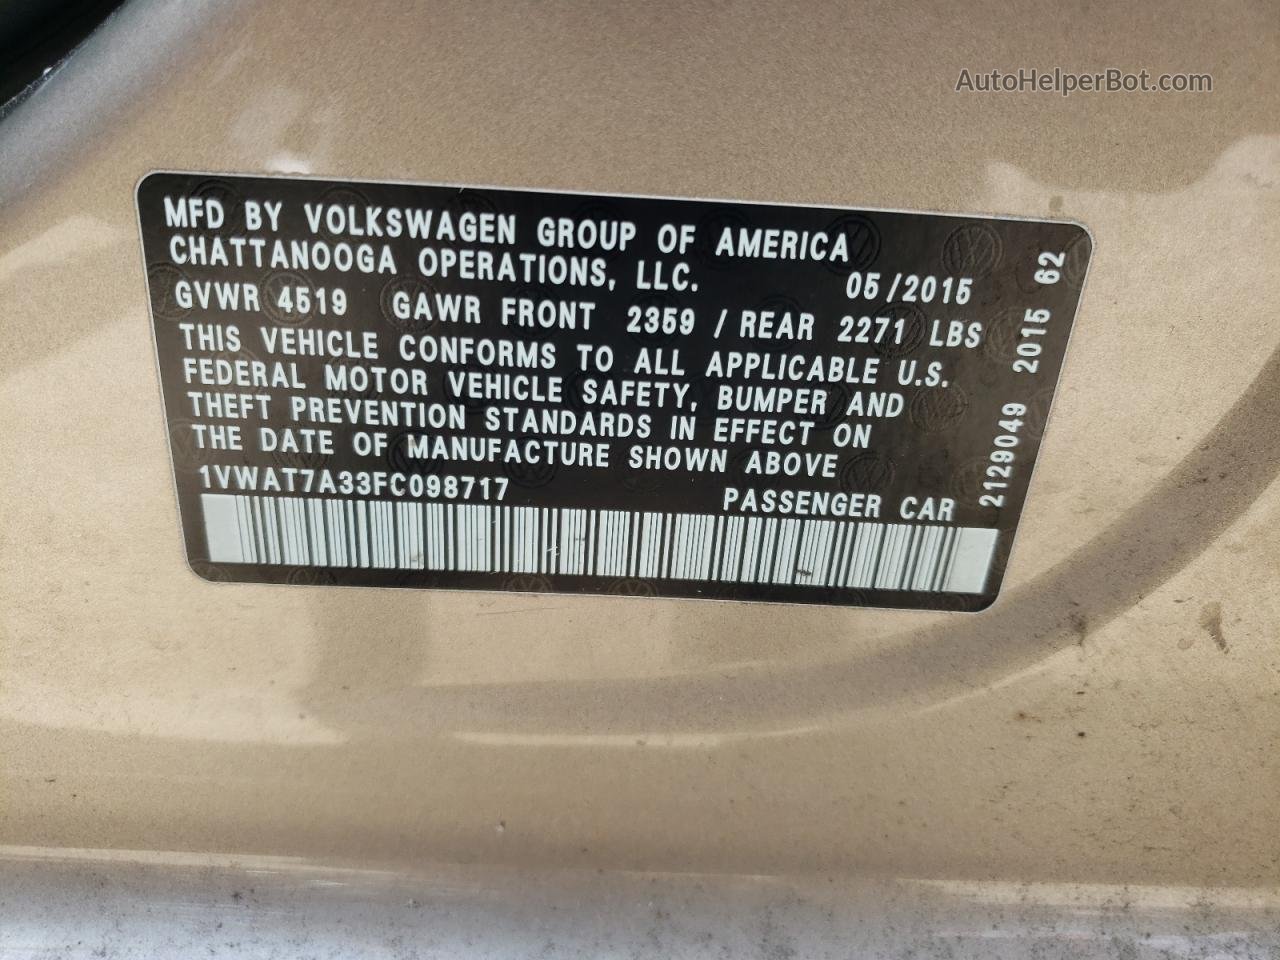 2015 Volkswagen Passat S Желто-коричневый vin: 1VWAT7A33FC098717